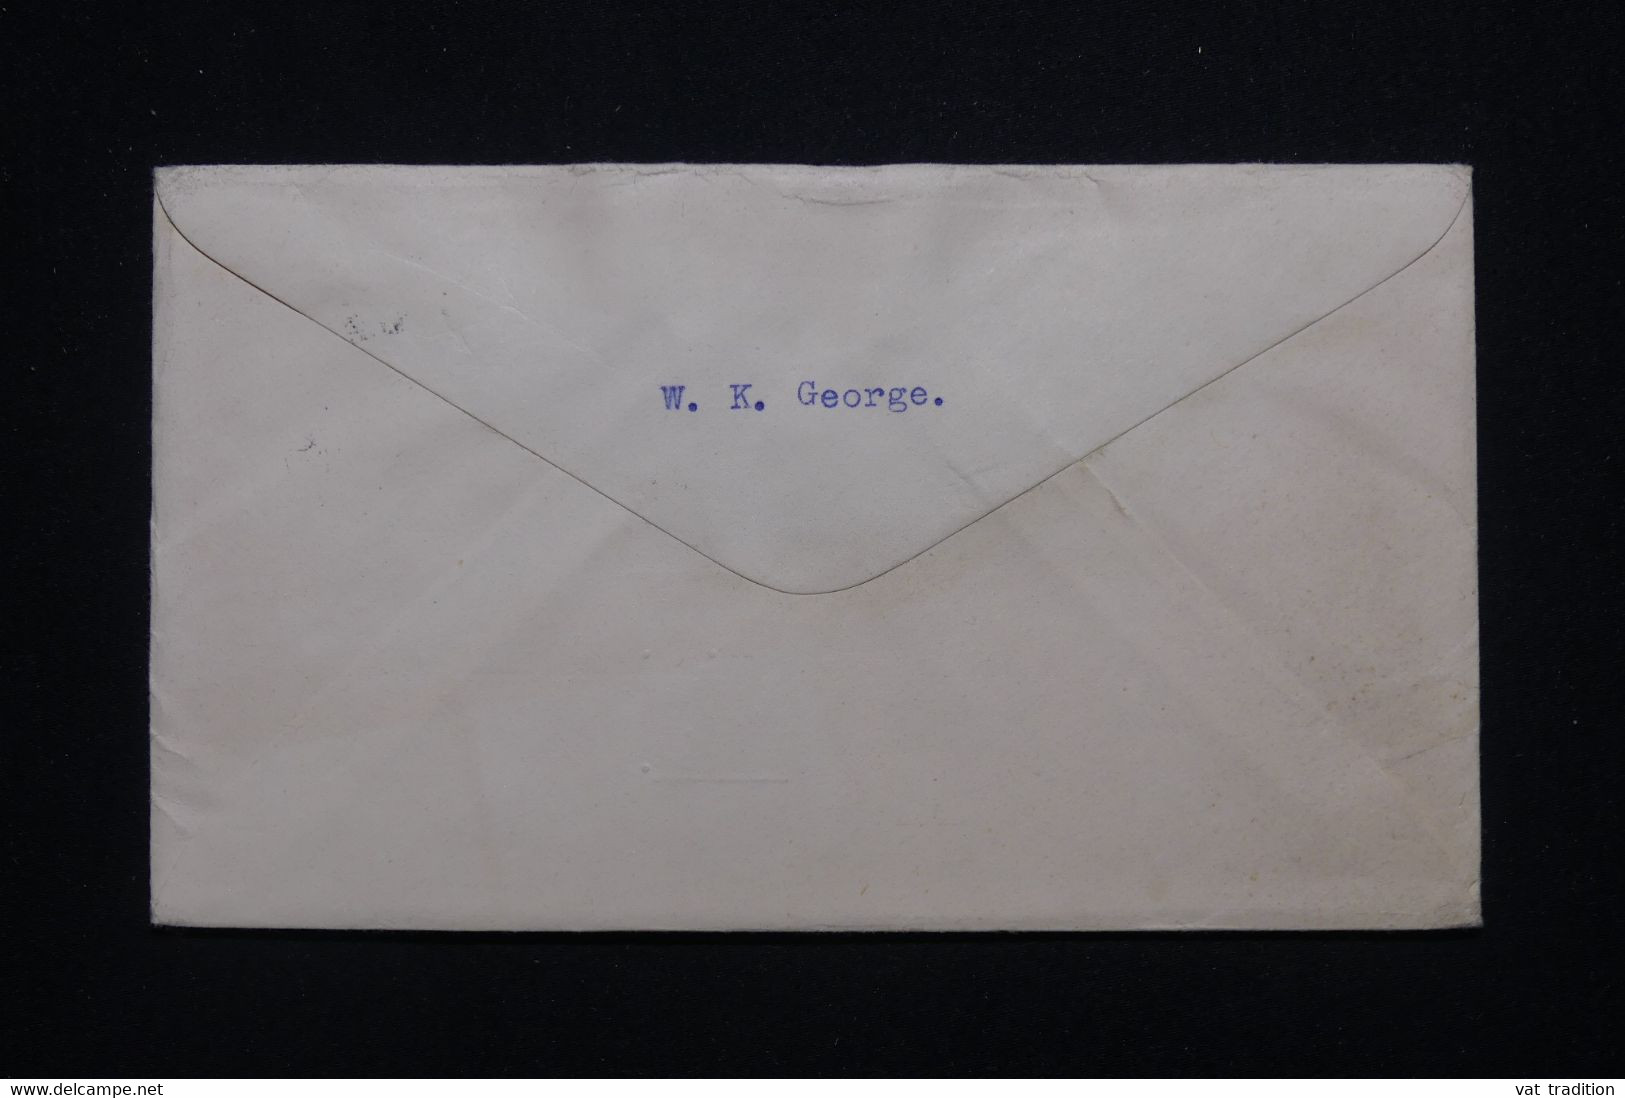 NOUVELLE ZÉLANDE - Enveloppe Souvenir Du Centenaire En 1956 Pour La France - L 98069 - Storia Postale